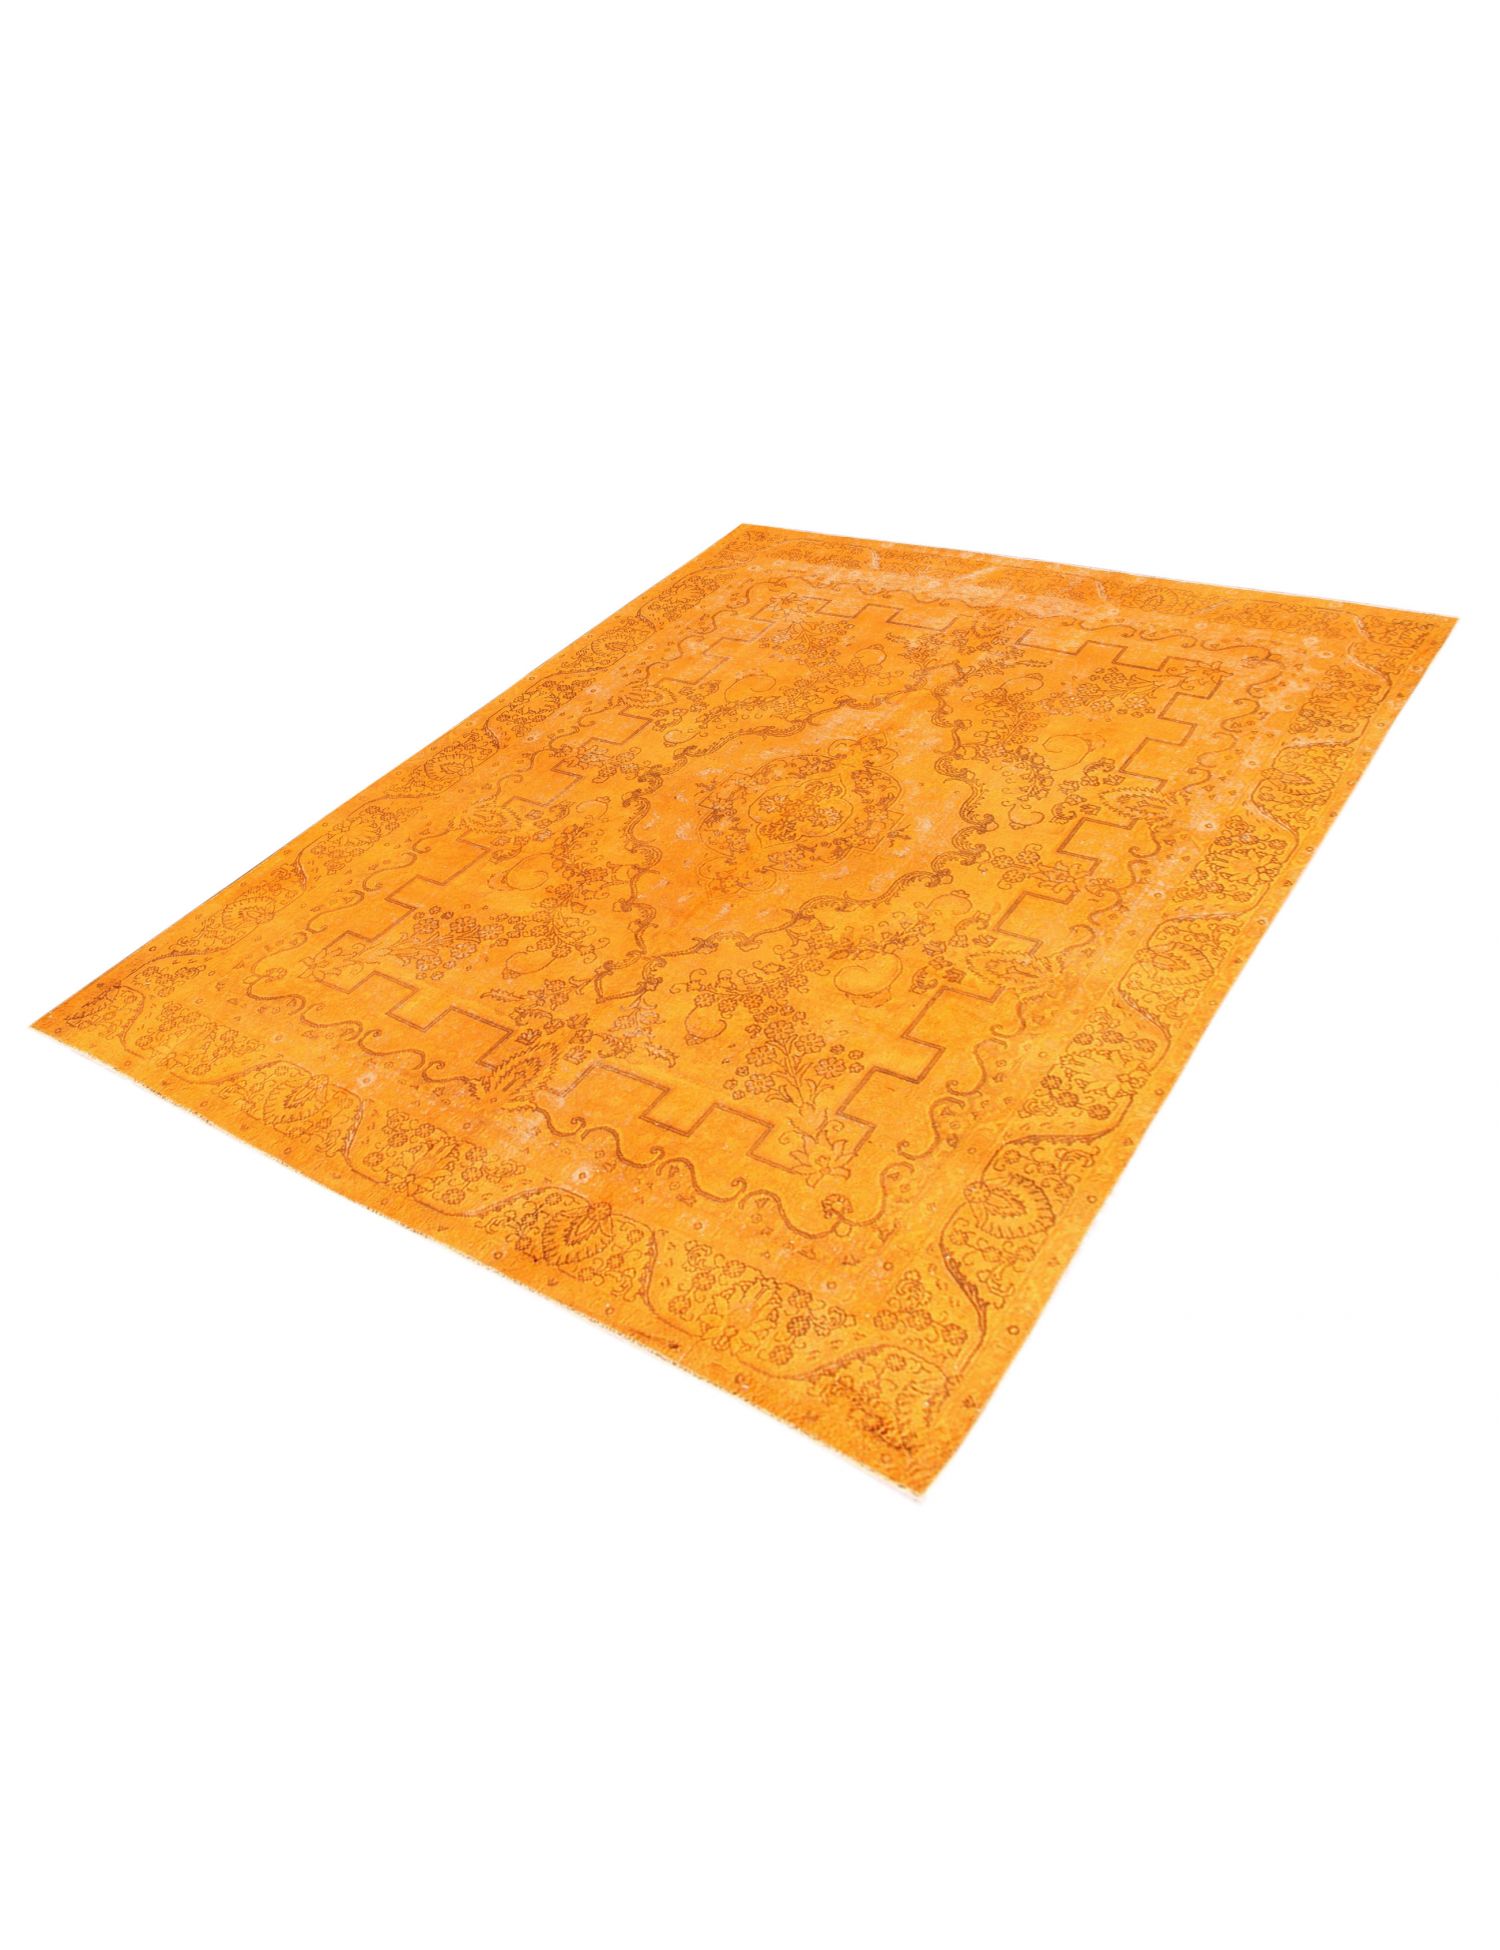 Persialaiset vintage matot  oranssi <br/>385 x 280 cm